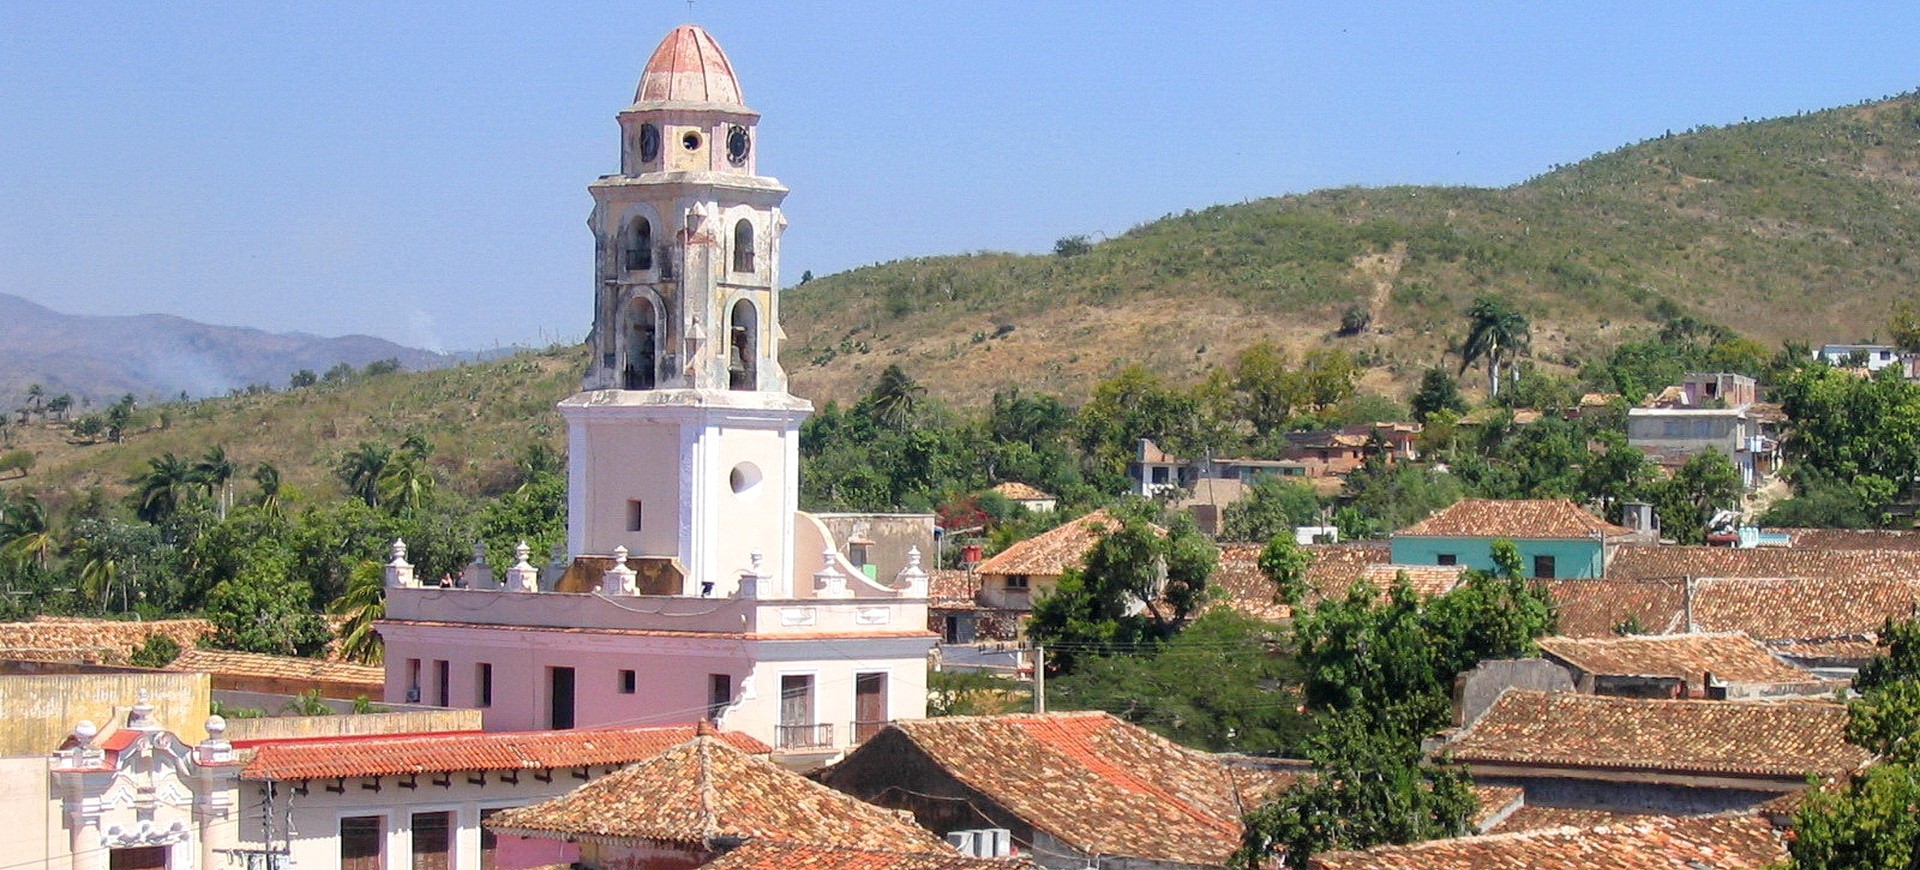 Cuba Trinidad vieille ville